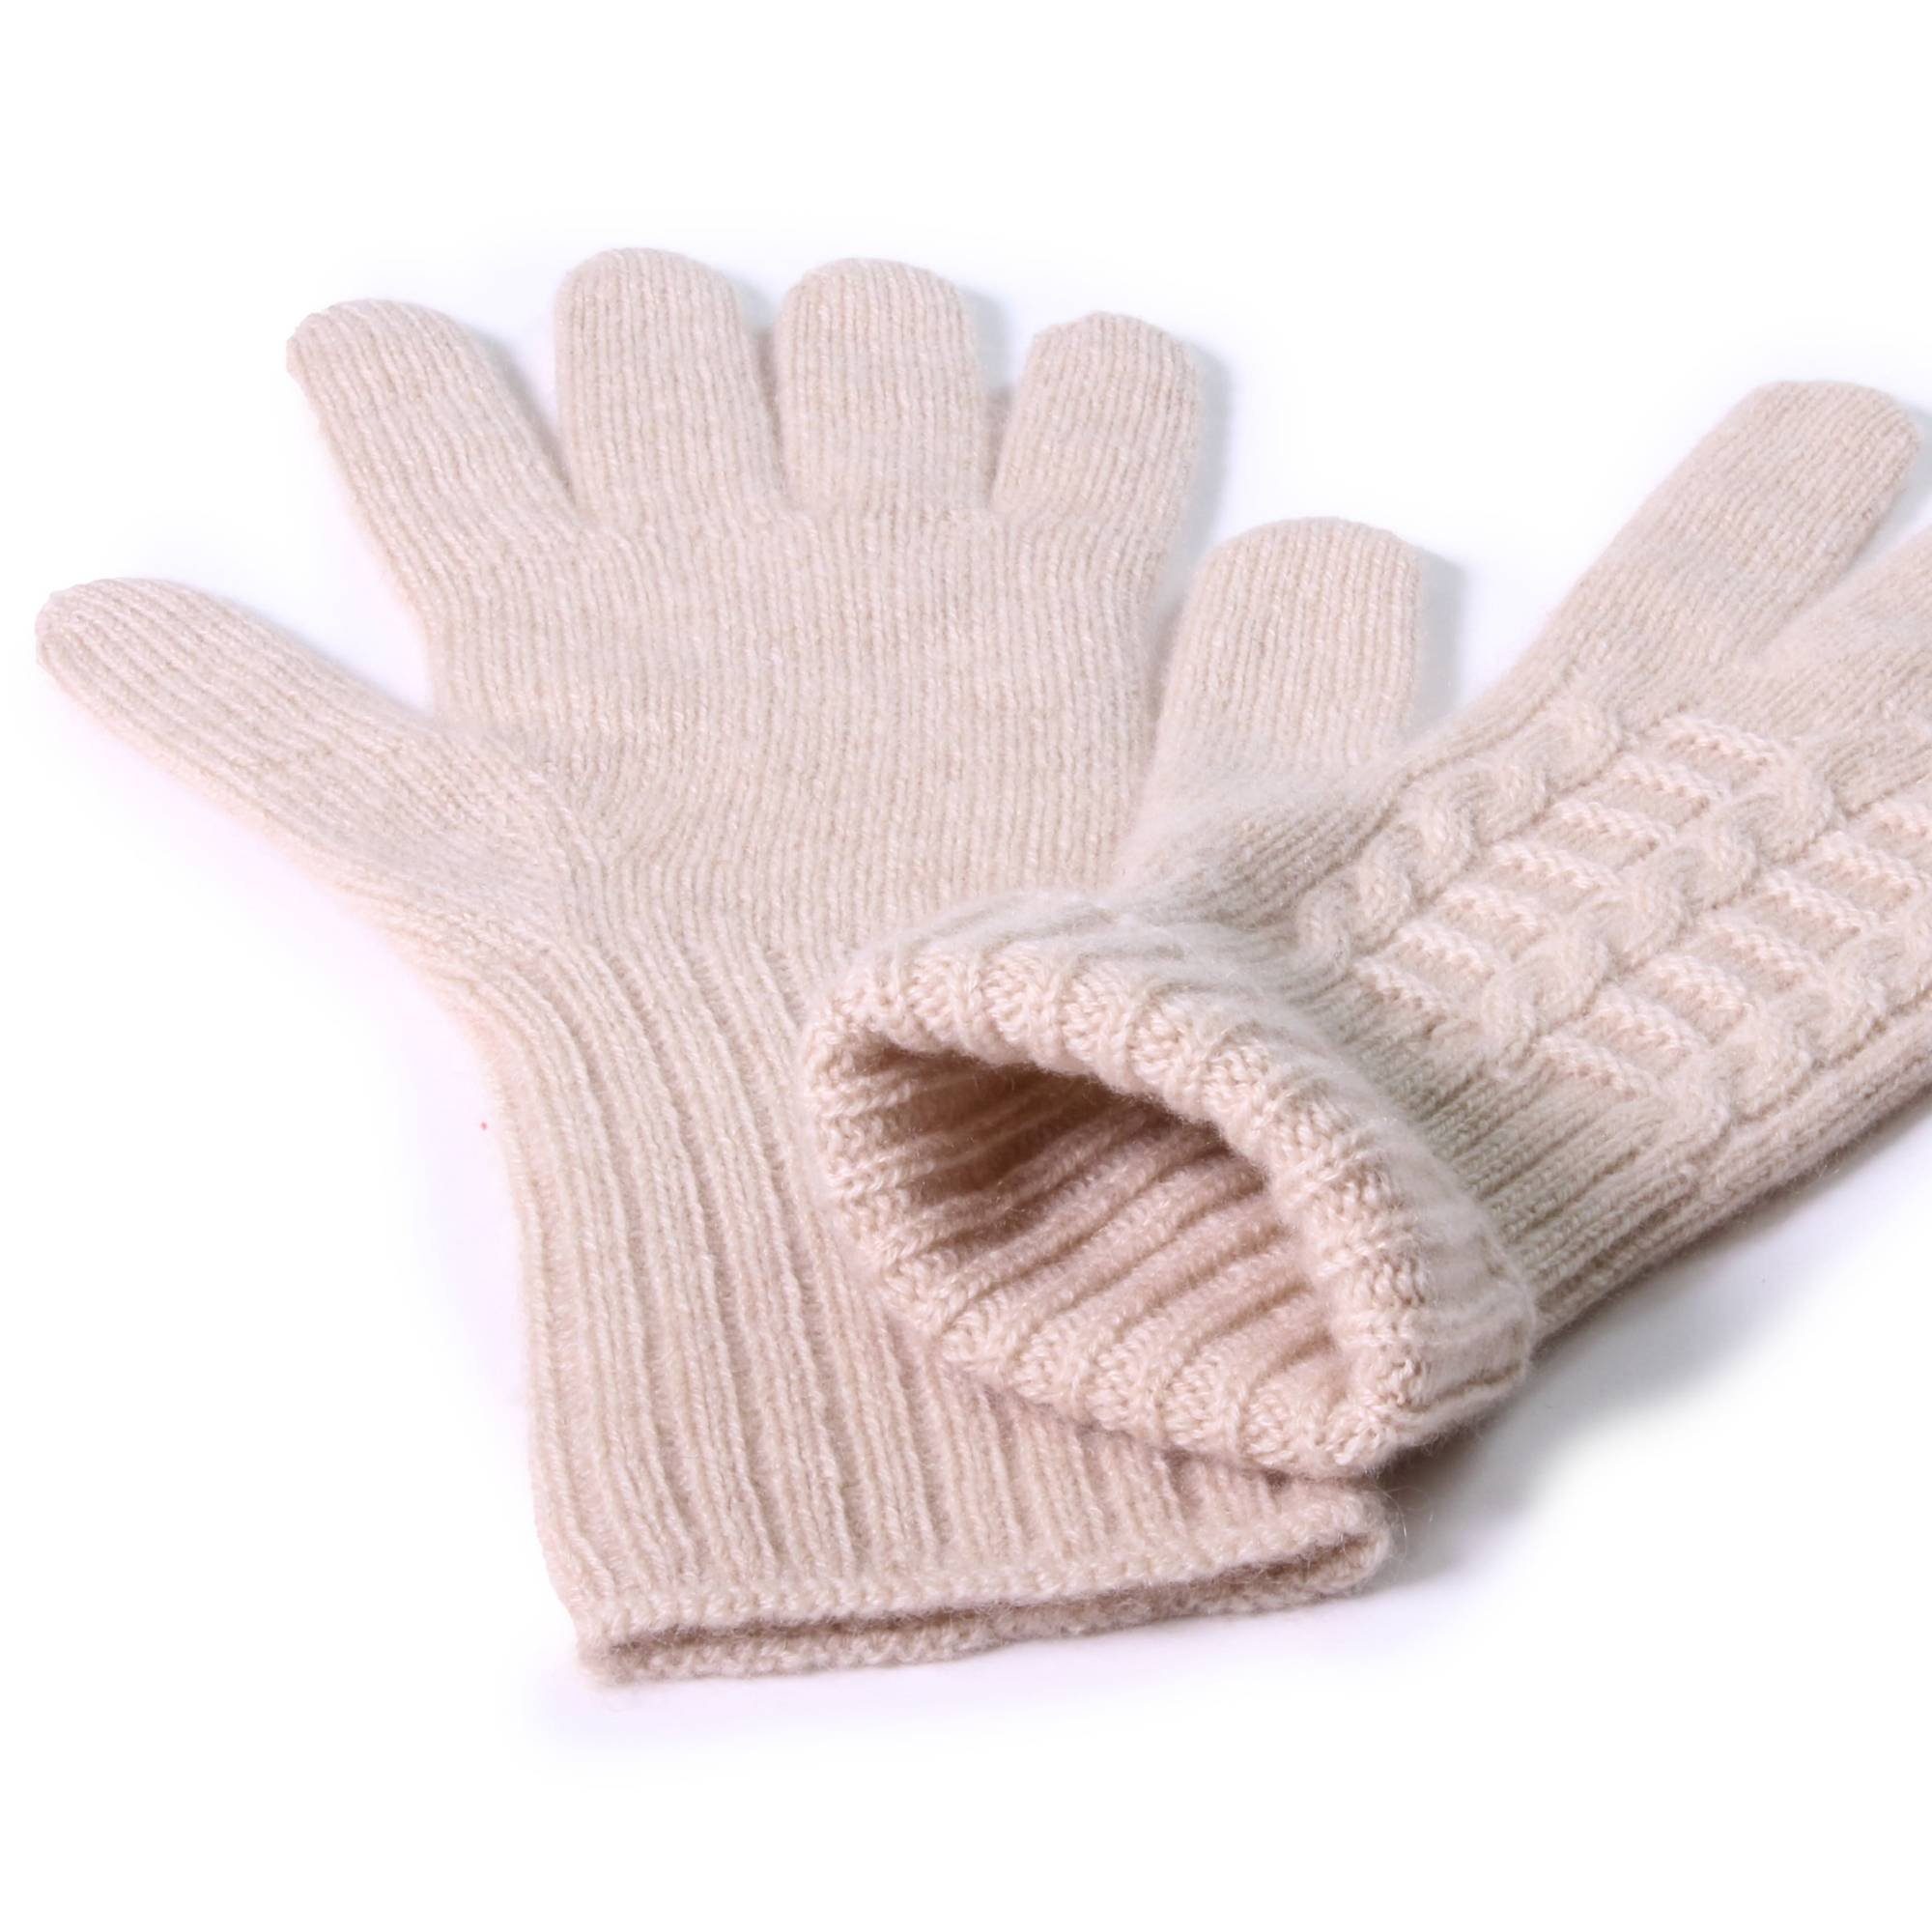 Kaschmir DamenBeige Tumelo Strickhandschuhe 100% Handschuhe